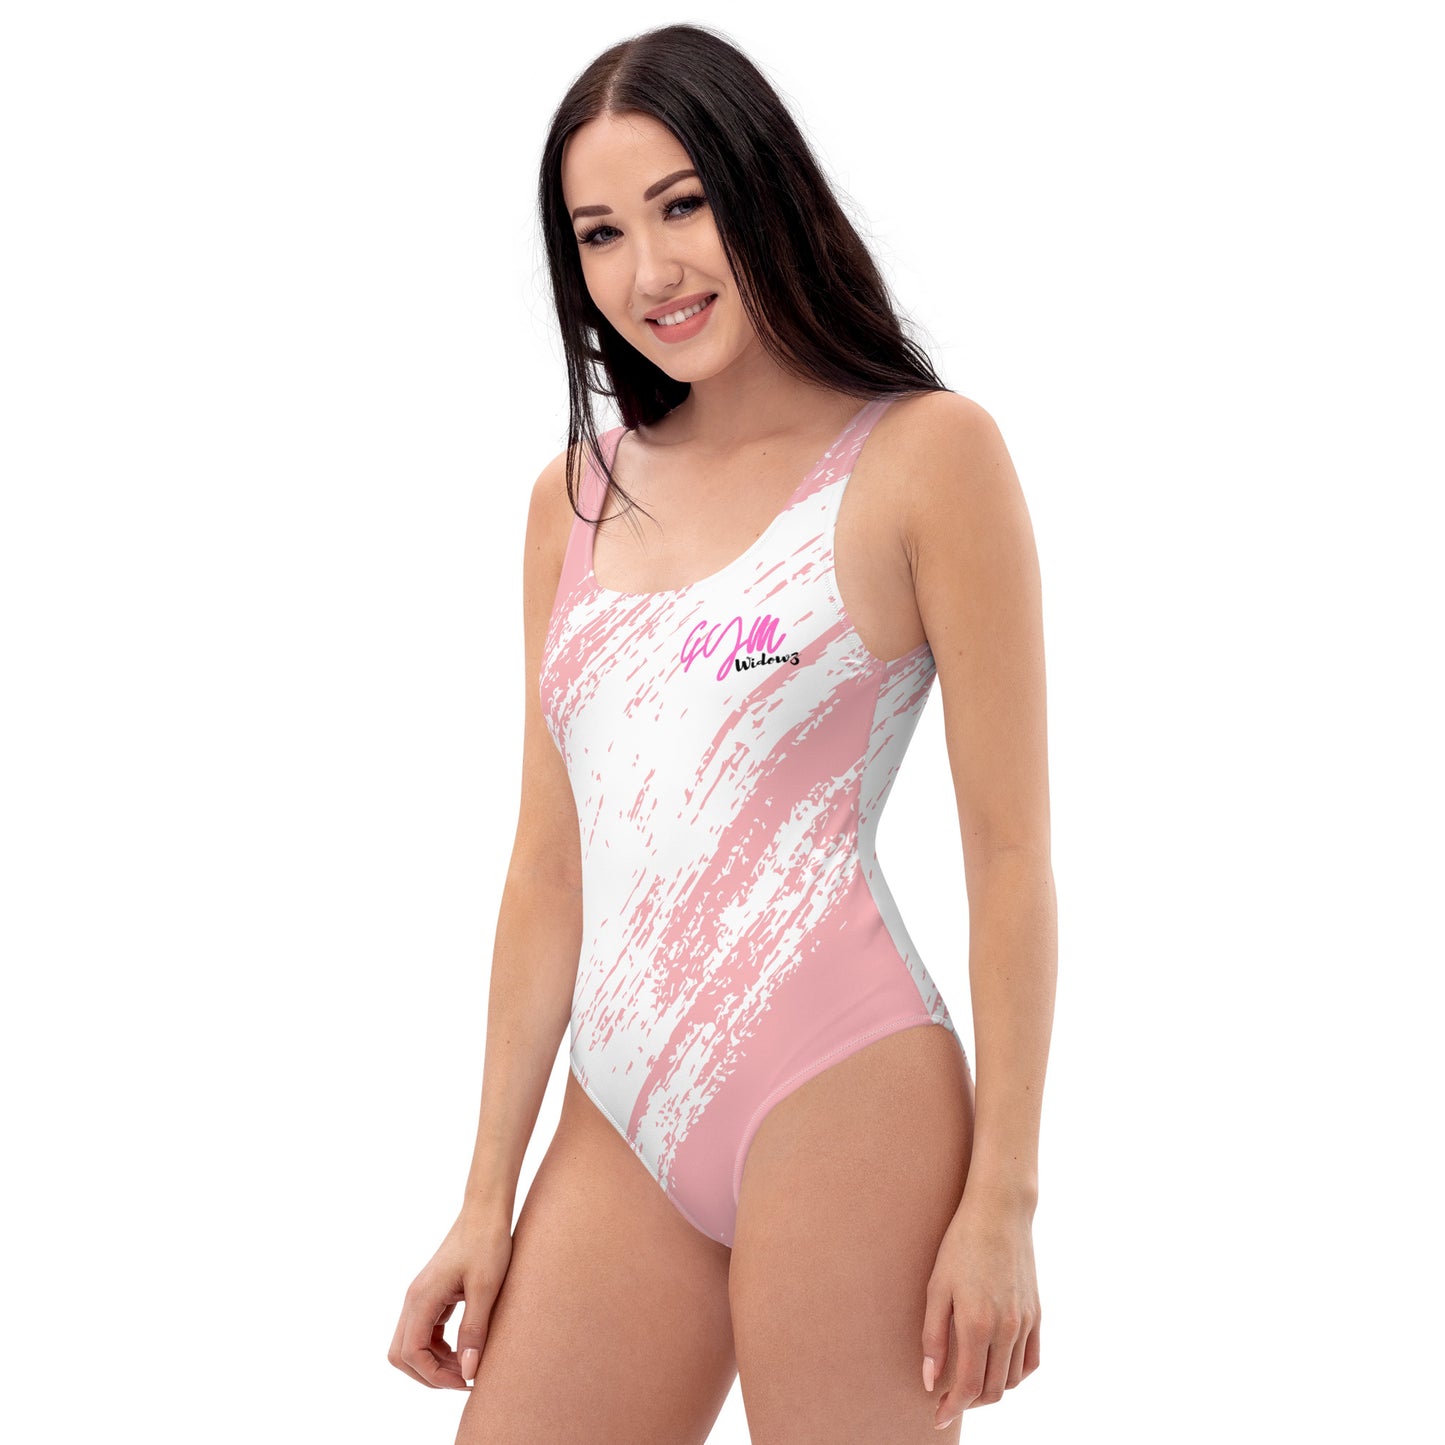 GymWidowz One-Piece Swimsuit - Distressed Pink